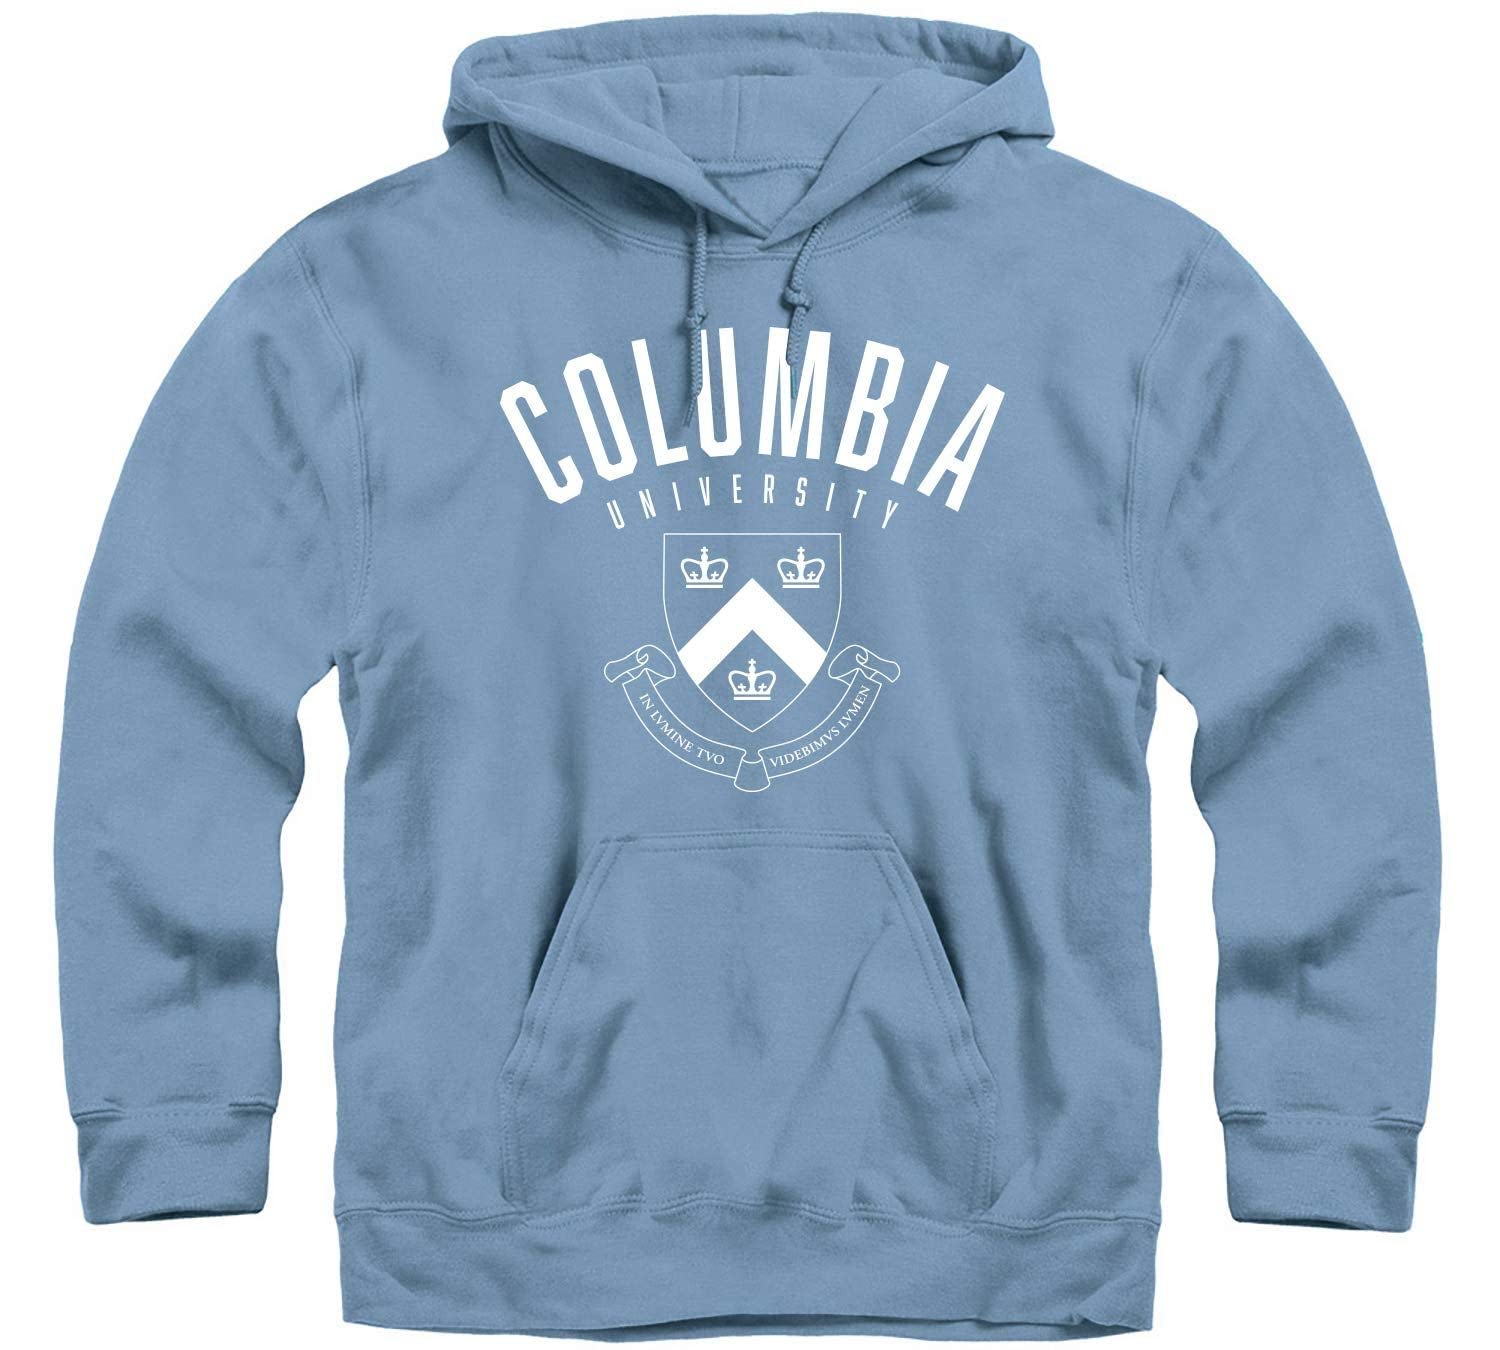 Columbia University Heritage Hooded Sweatshirt II (Light Blue